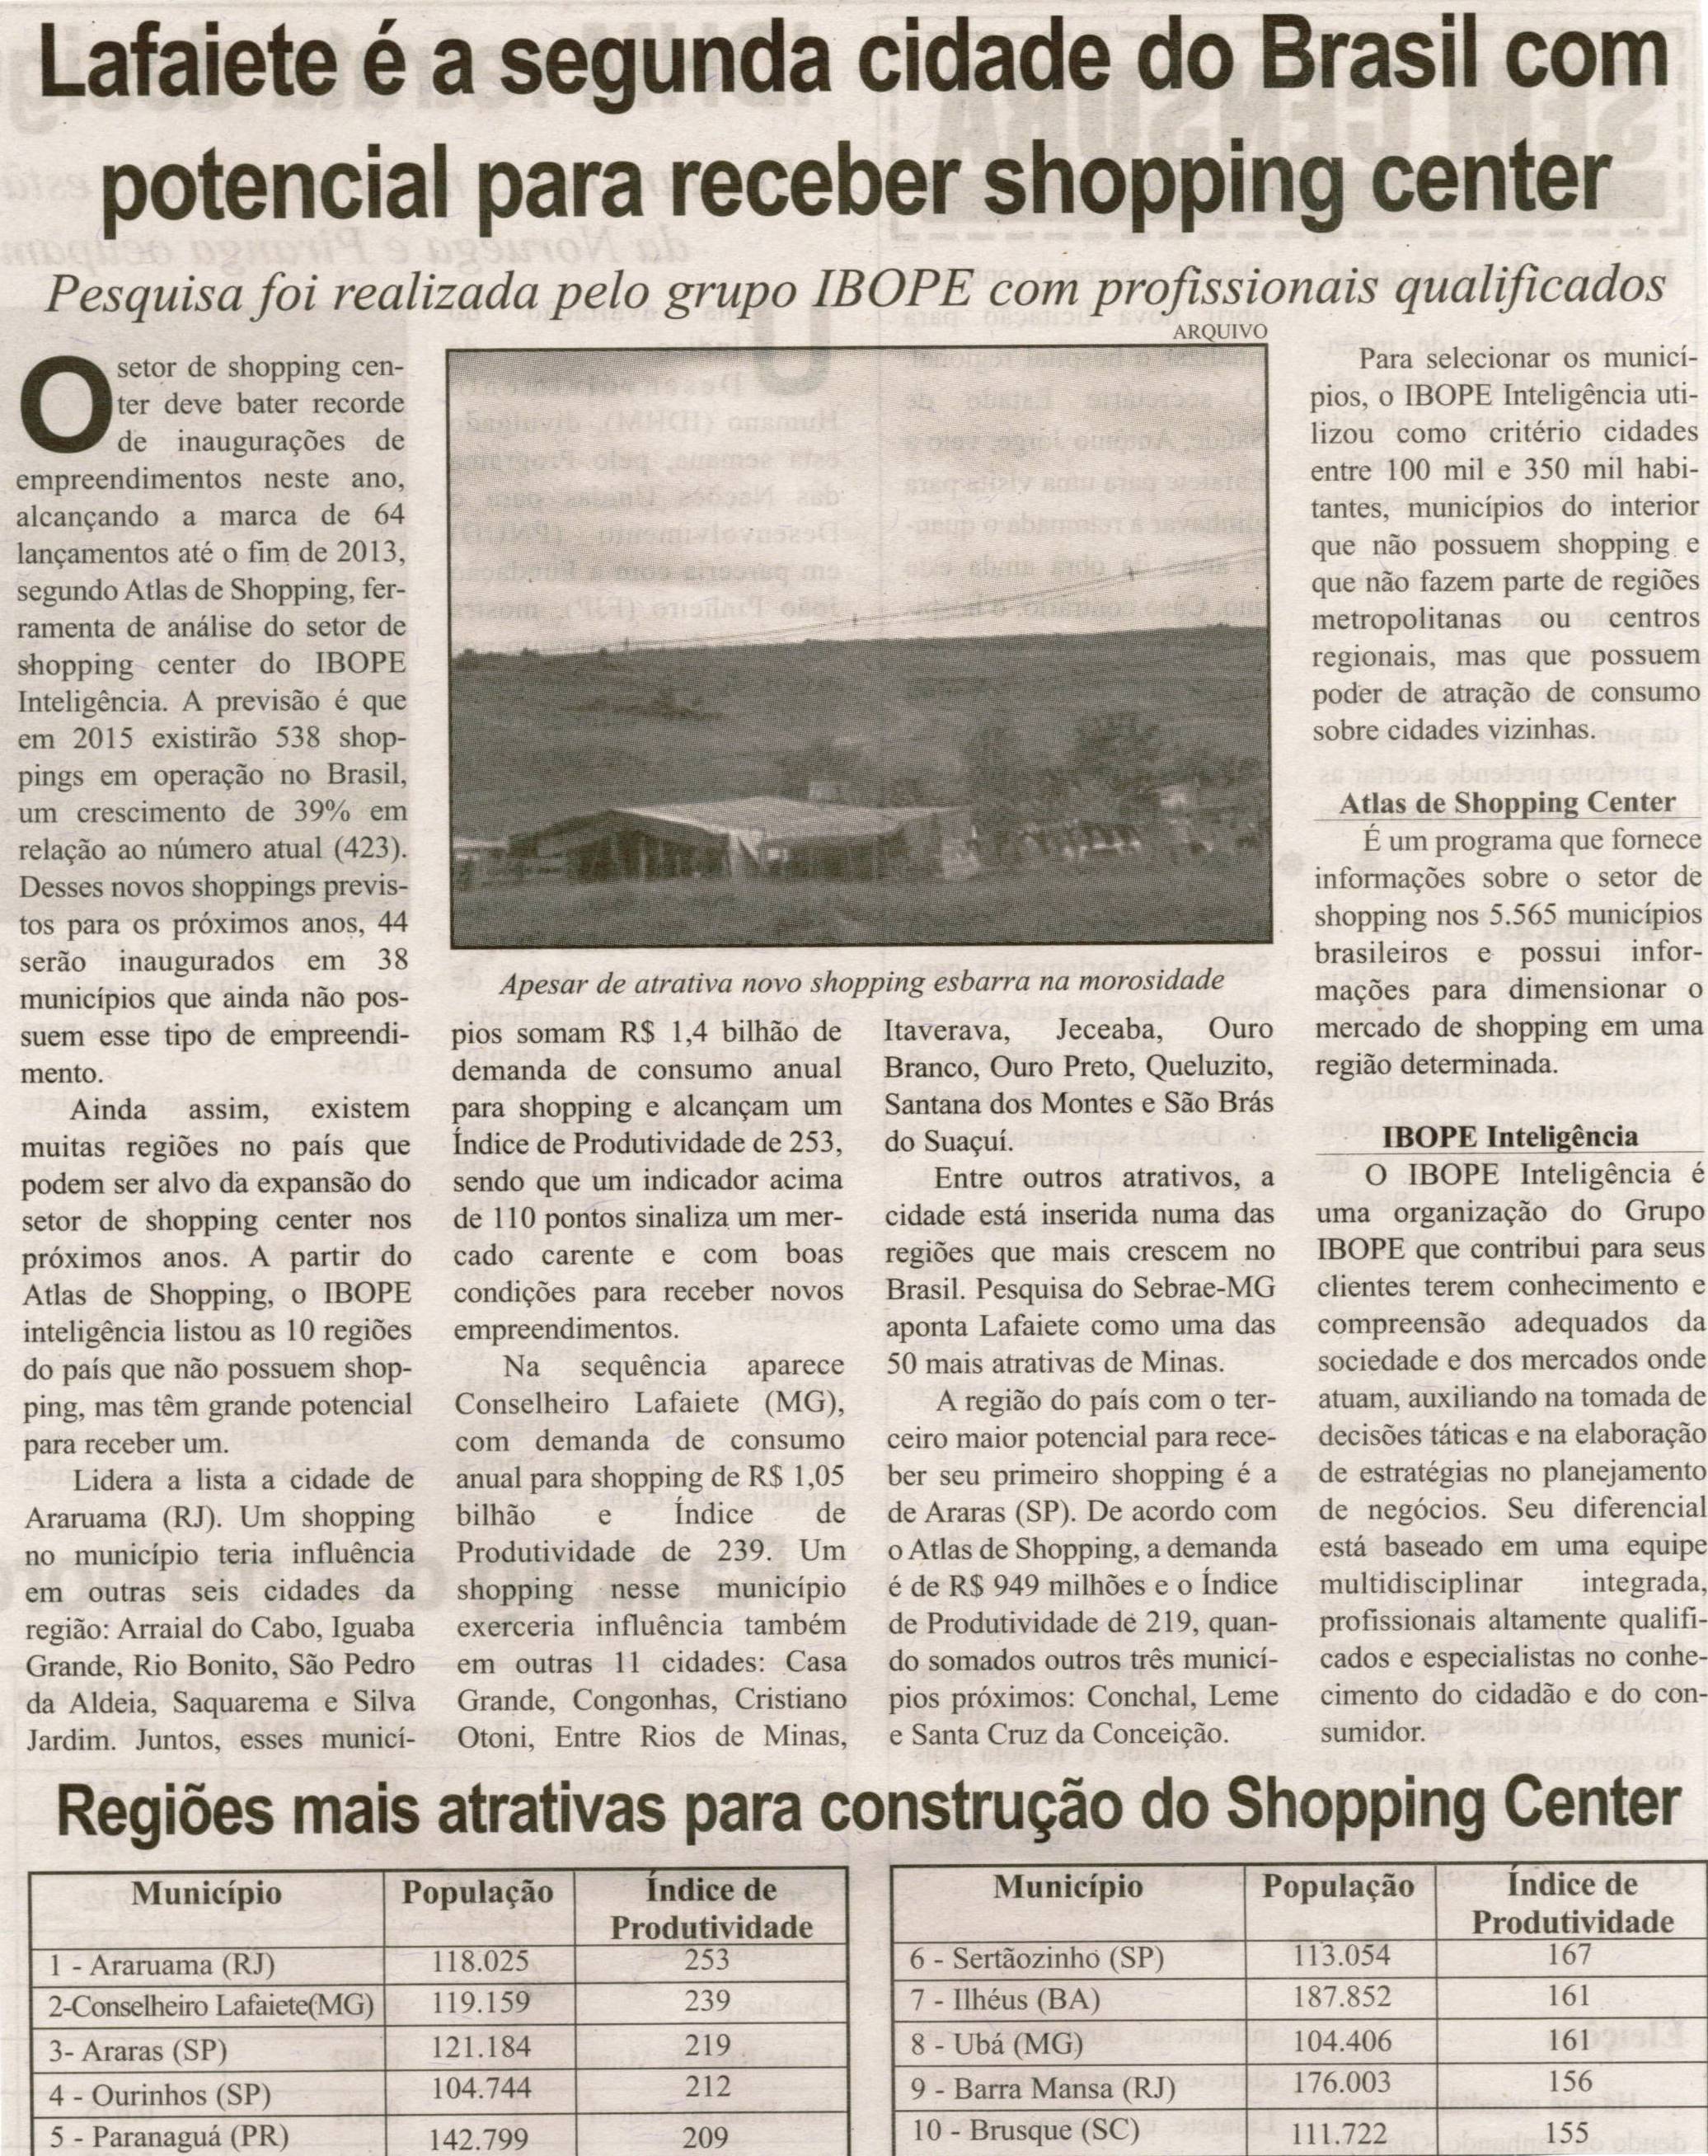 Lafaiete é segunda cidade do Brasil com potencial para receber shopping center: pesquisa foi realizada pelo Grupo IBOPE com profissionais qualificados. Correio de Minas, Conselheiro Lafaiete, 03 ago. 2013, p. 04.